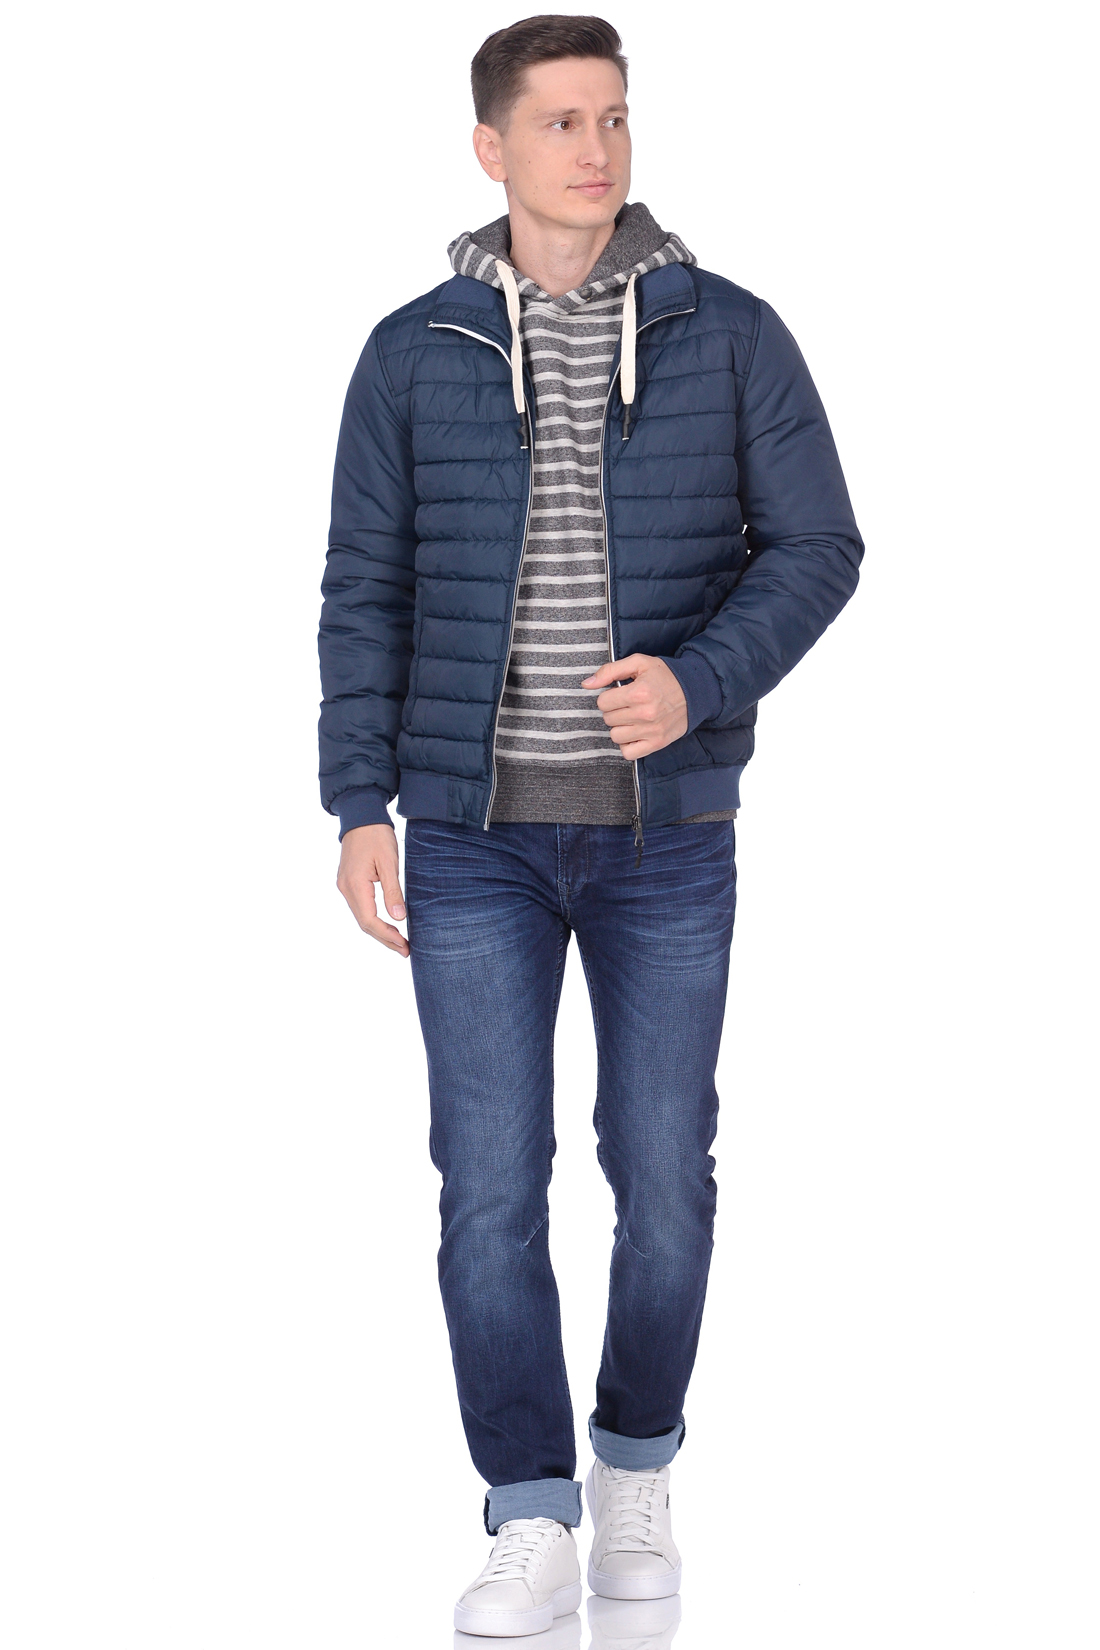 Стёганая куртка с резинками-рибана (арт. baon B538559), размер S, цвет синий Стёганая куртка с резинками-рибана (арт. baon B538559) - фото 4